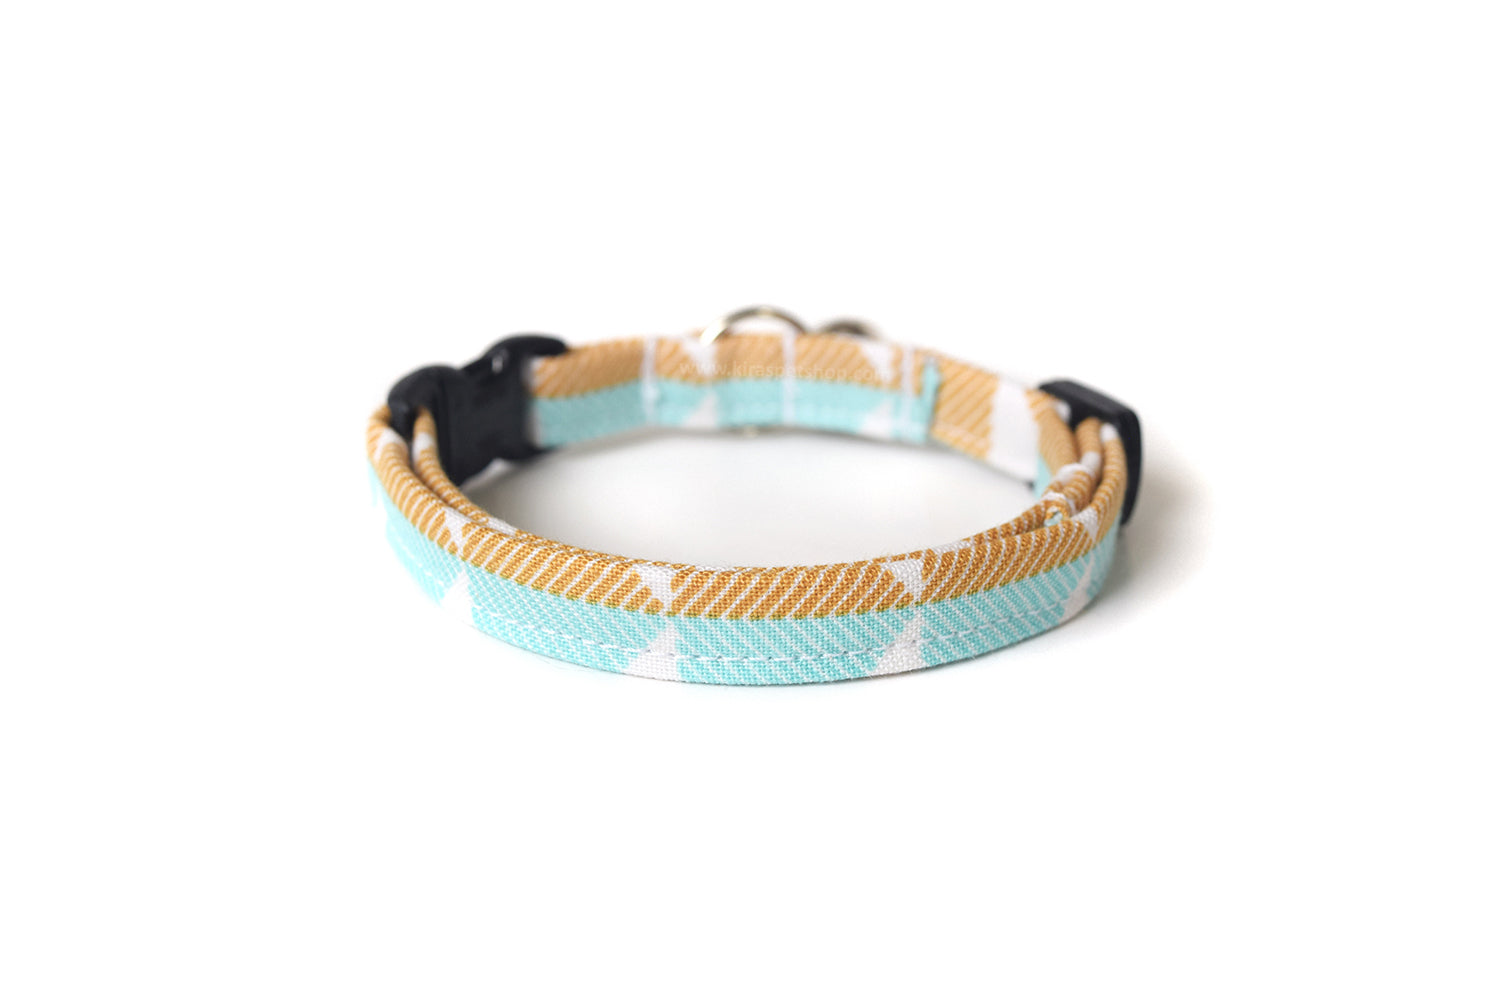 Modern Cat Collar - Light Blue & Gold - Breakaway Cat Collar - Handmade by Kira's Pet Shop